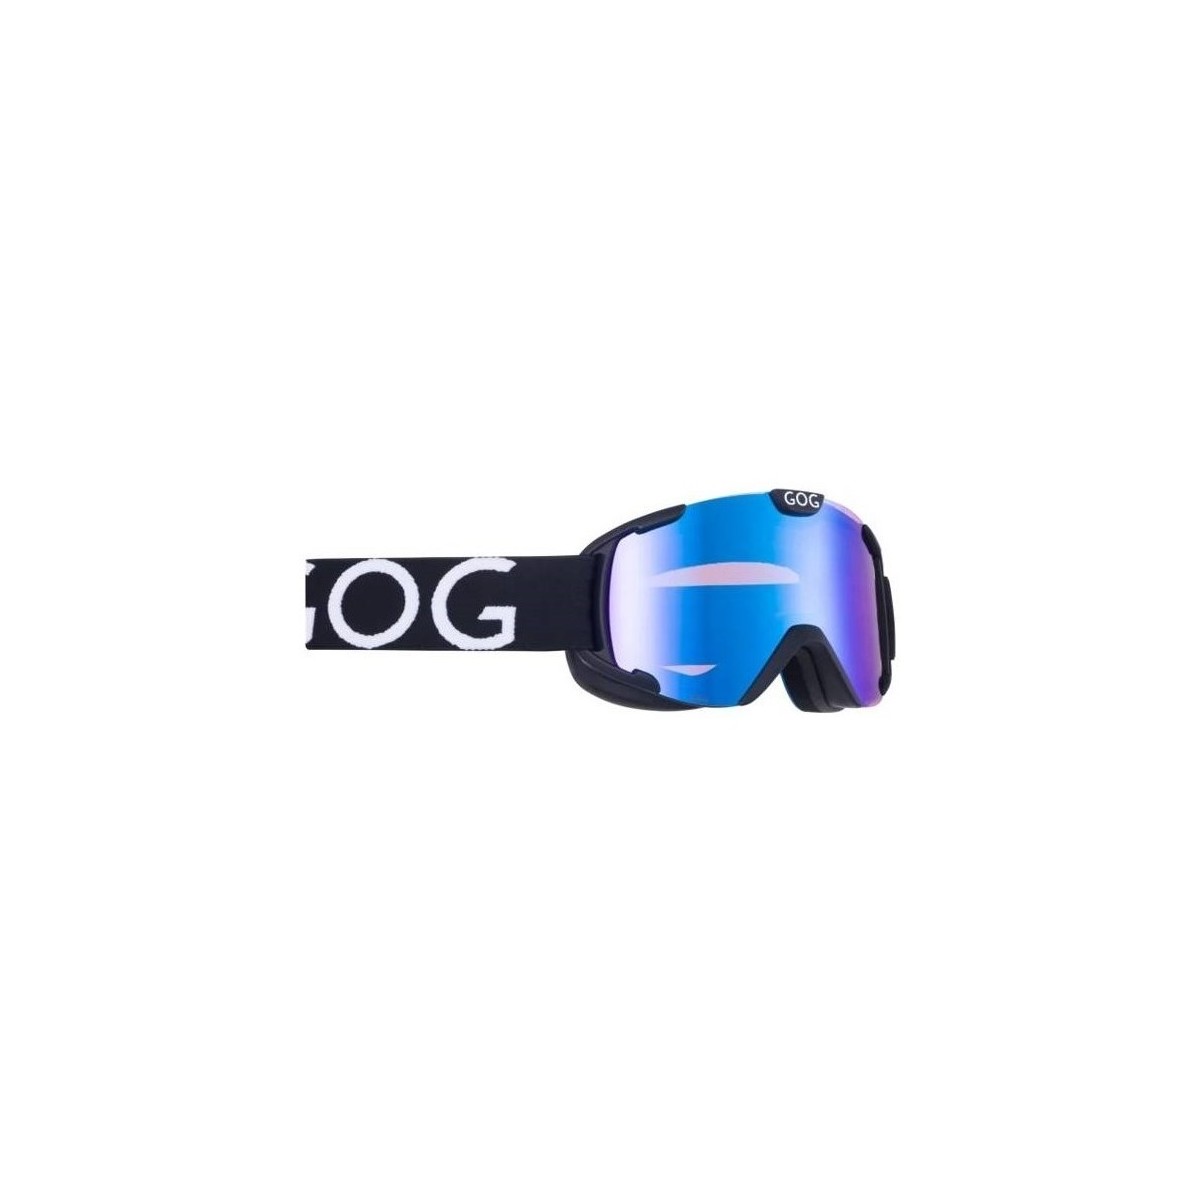 Accesorii Femei Accesorii sport Goggle Gog Nebula Negru